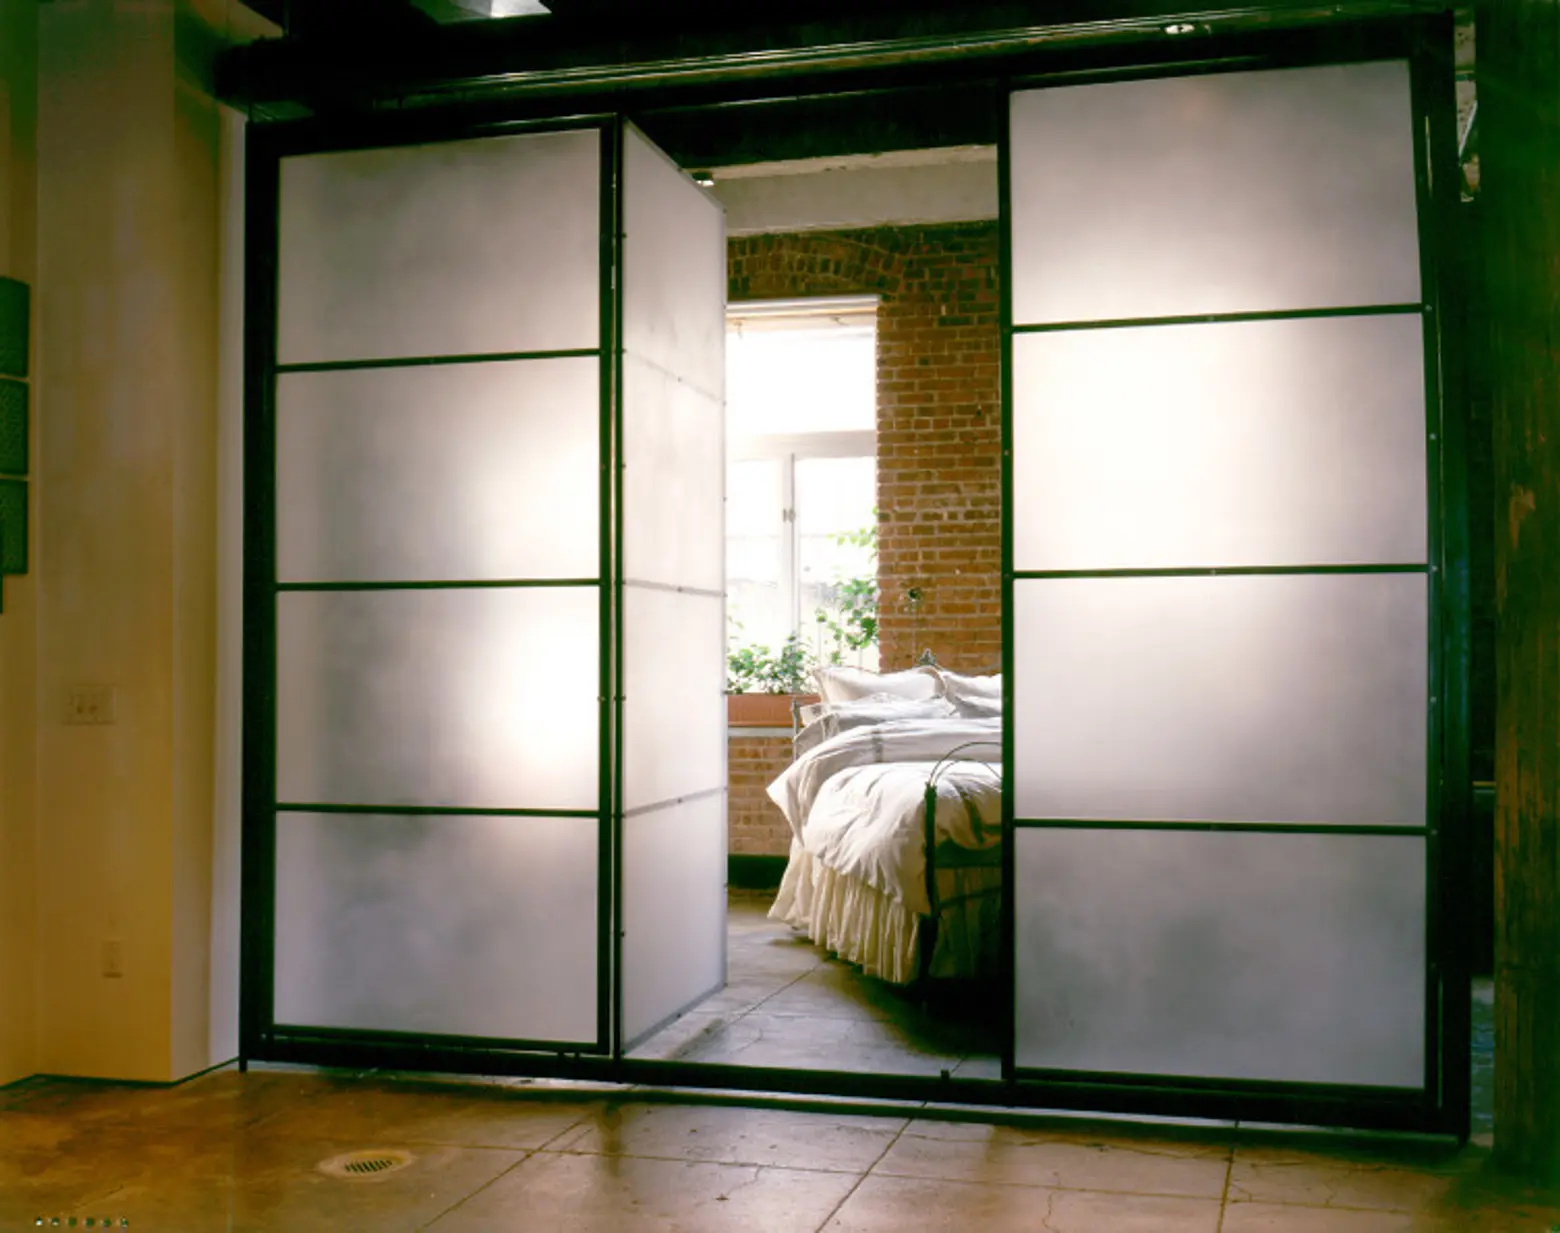 Lovitt Loft: Space for Living, Art and Commerce in a Former Tribeca Garage